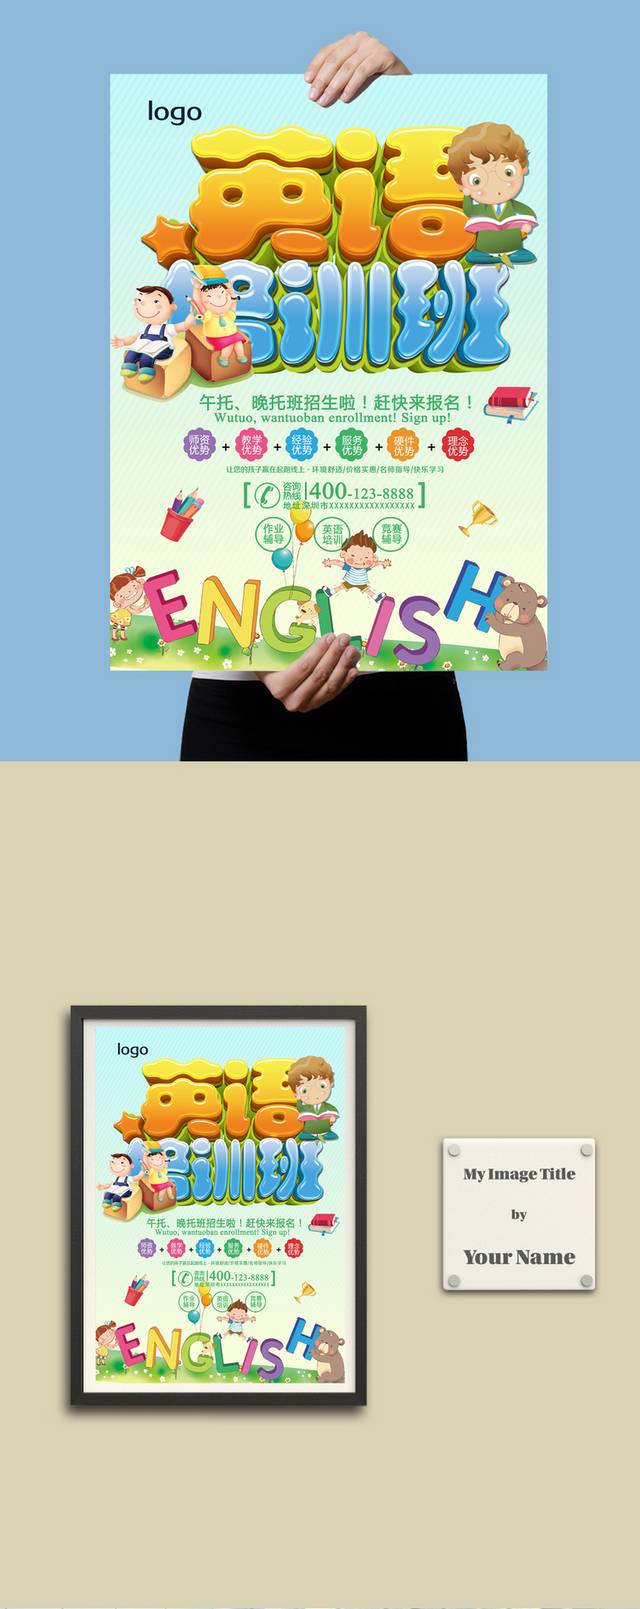 英语培训班招生海报PSD模板